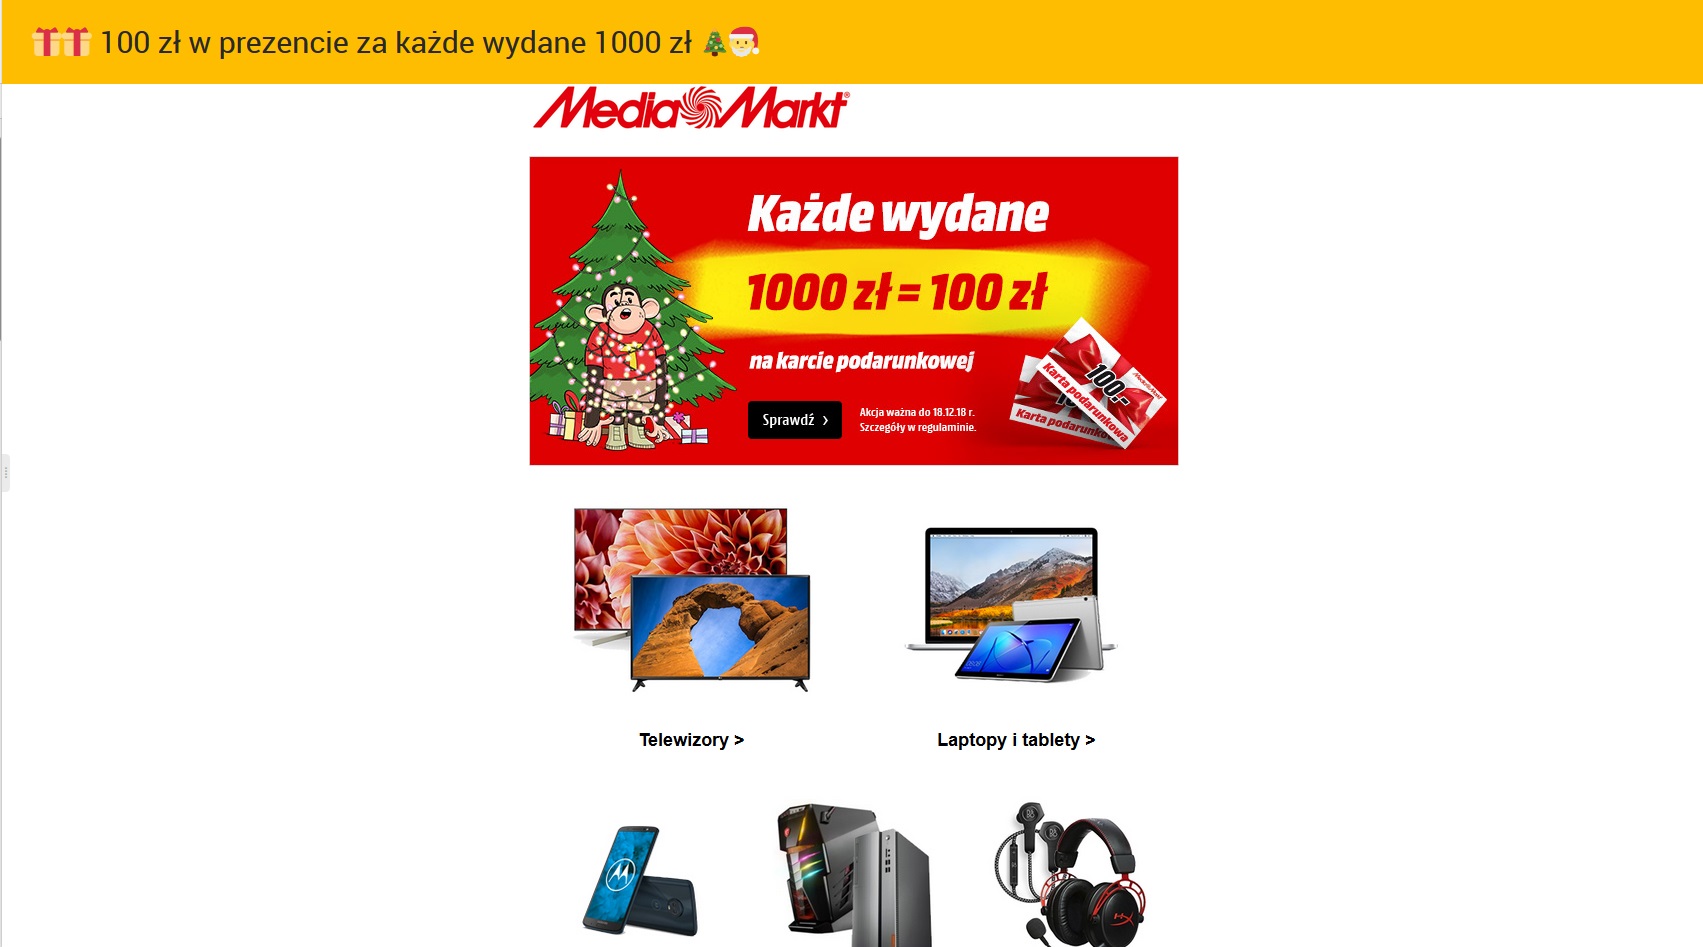 Świąteczny e-mail marketing w pięciu krokach. Pamiętałeś o nich?, Komerso.pl